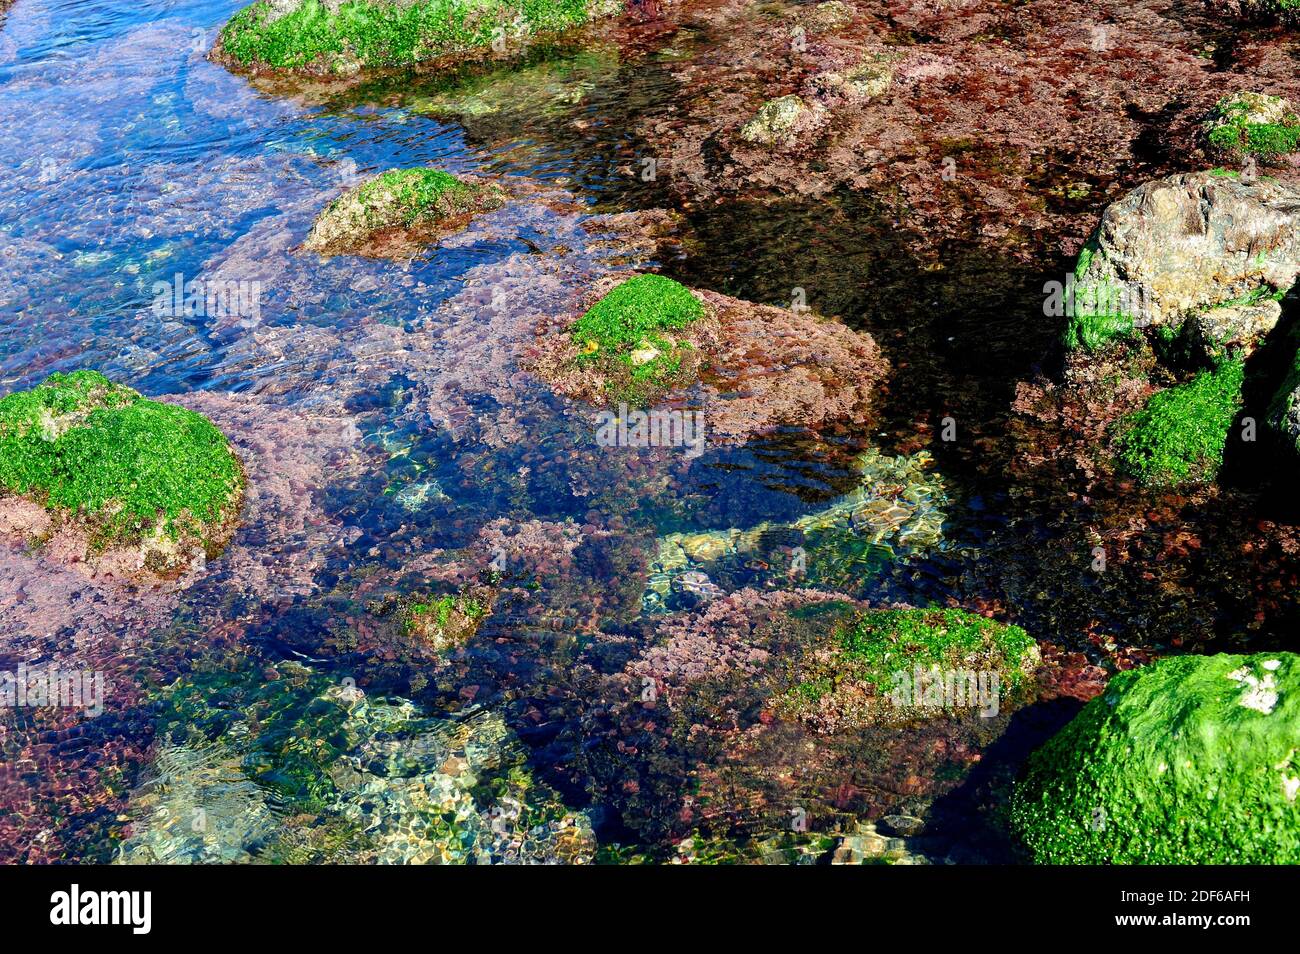 Seaweed in rocky coastline: sea lettuce (Ulva lactuca) and Corallina elongata. Costa Brava, Girona, Catalonia, Spain. Stock Photo